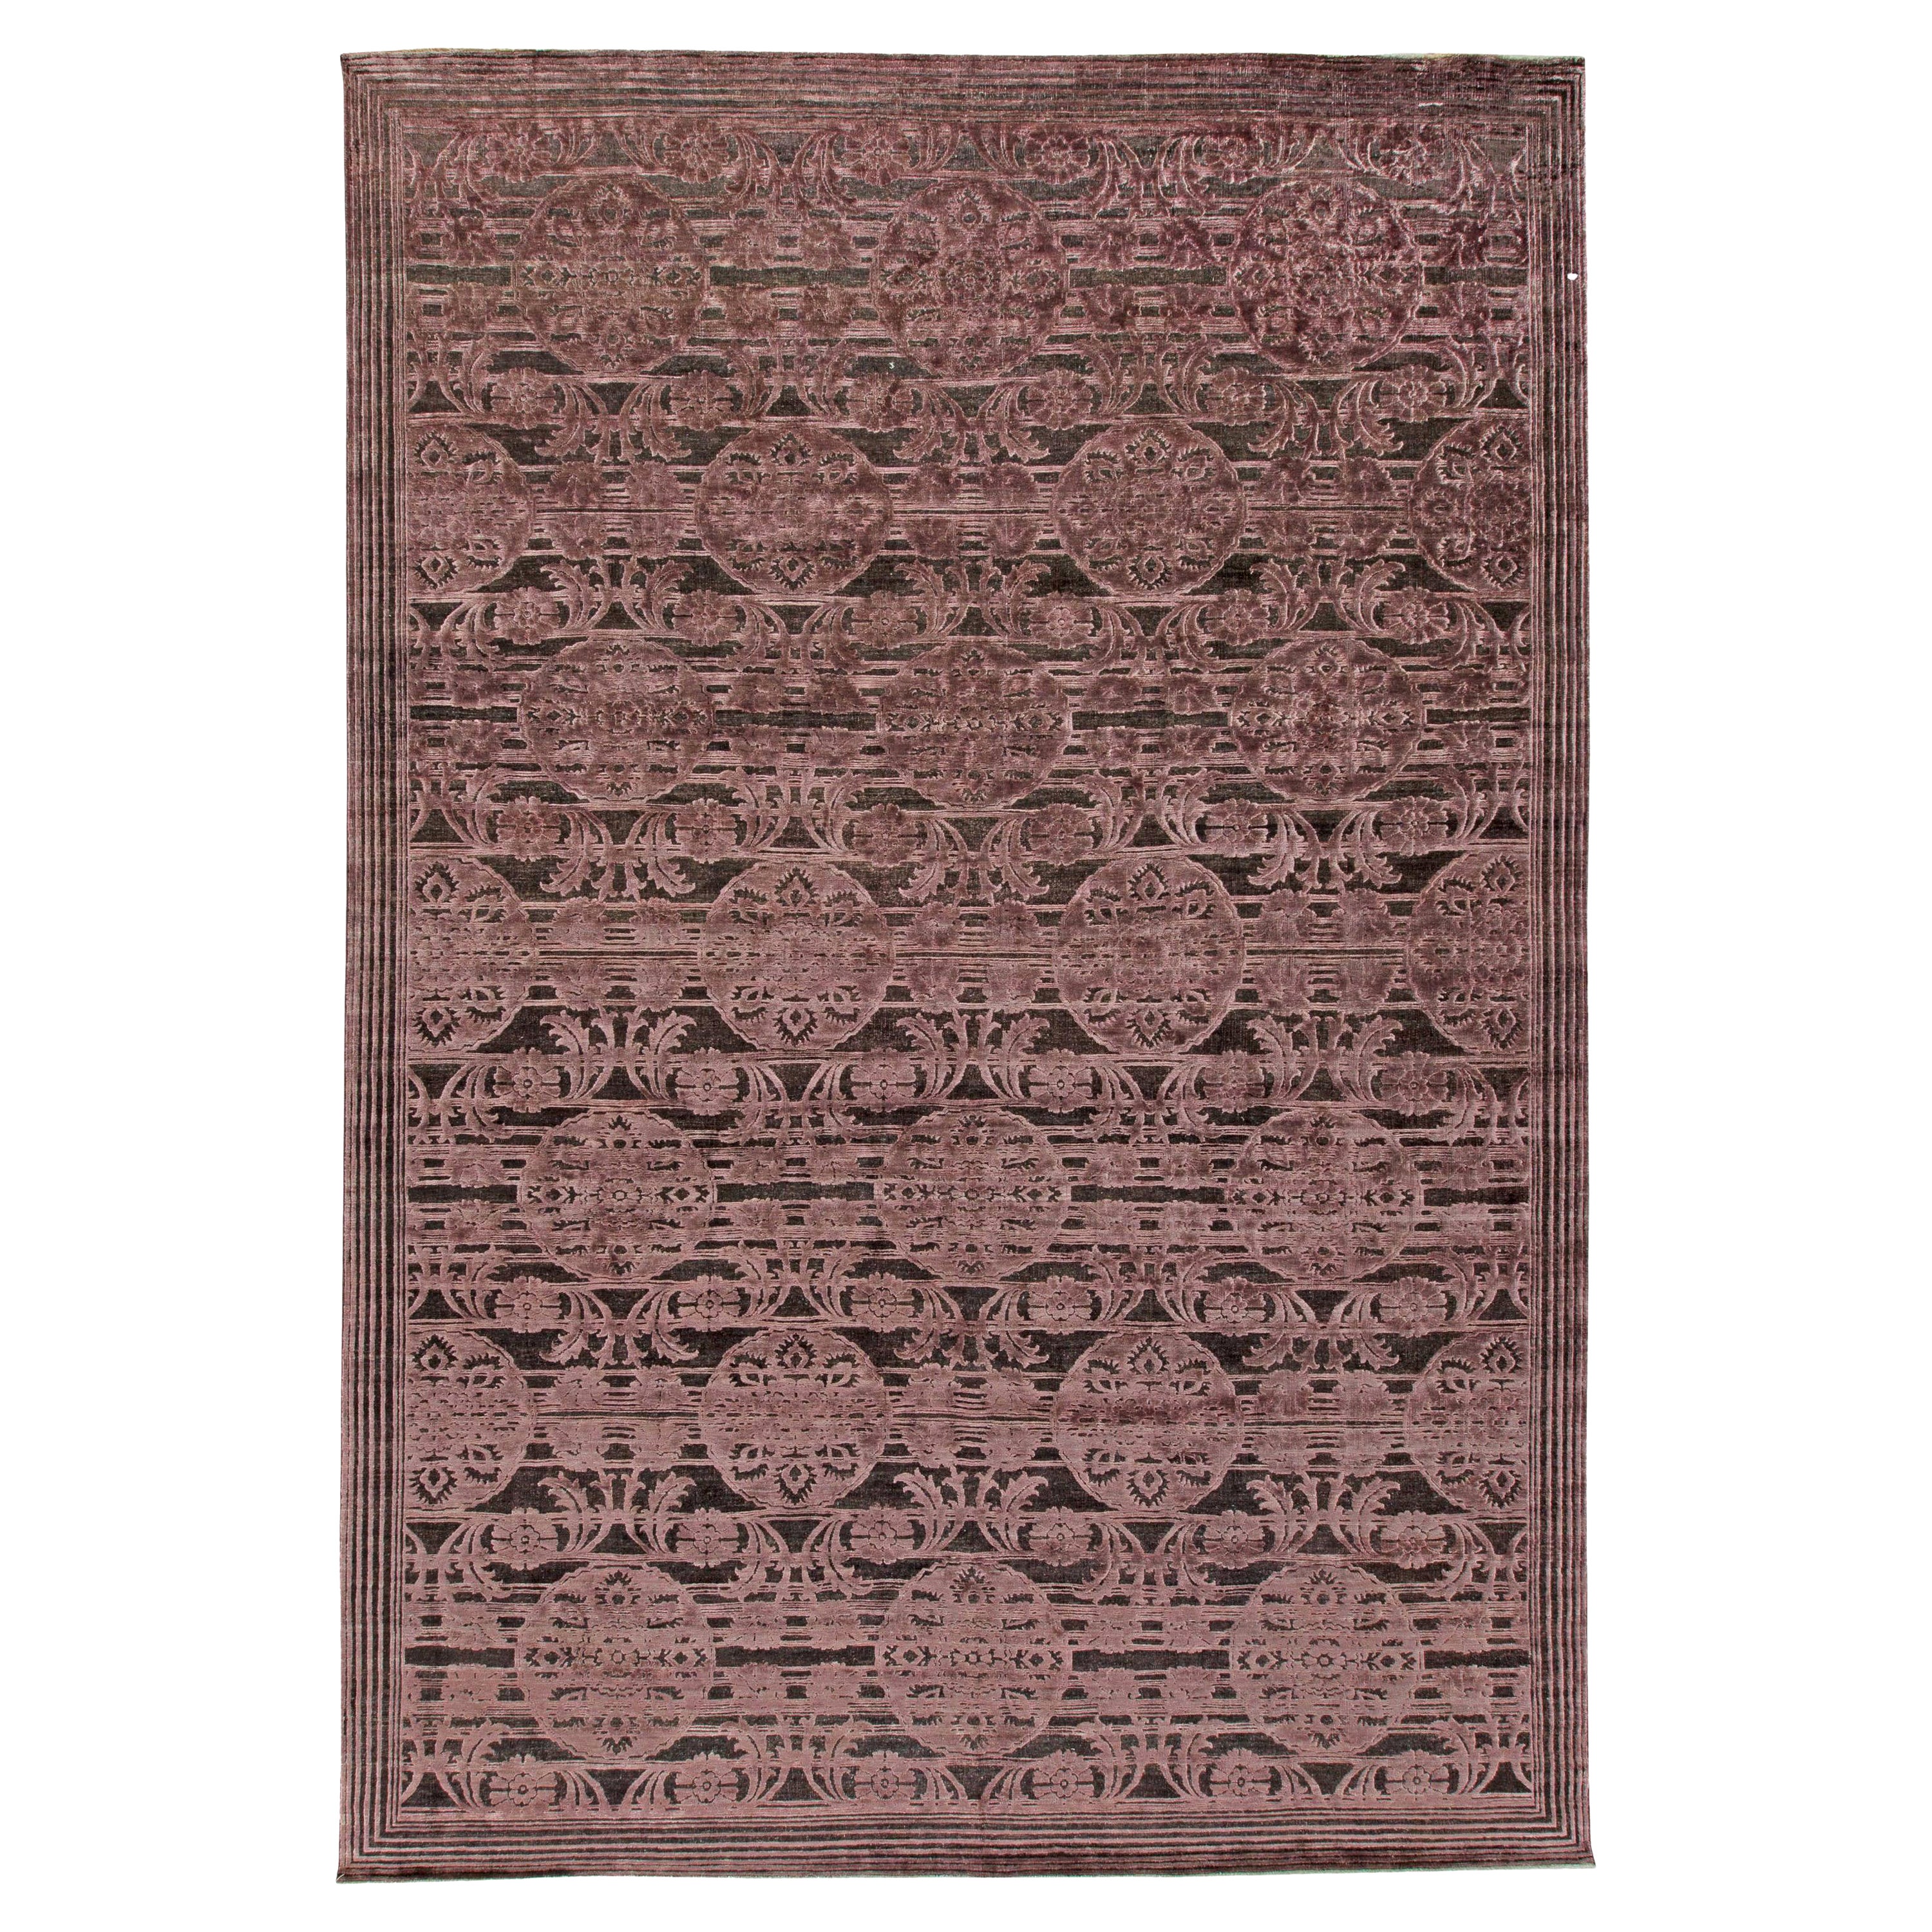 Contemporary Indian Handmade Wool Rug by Doris Leslie Blau